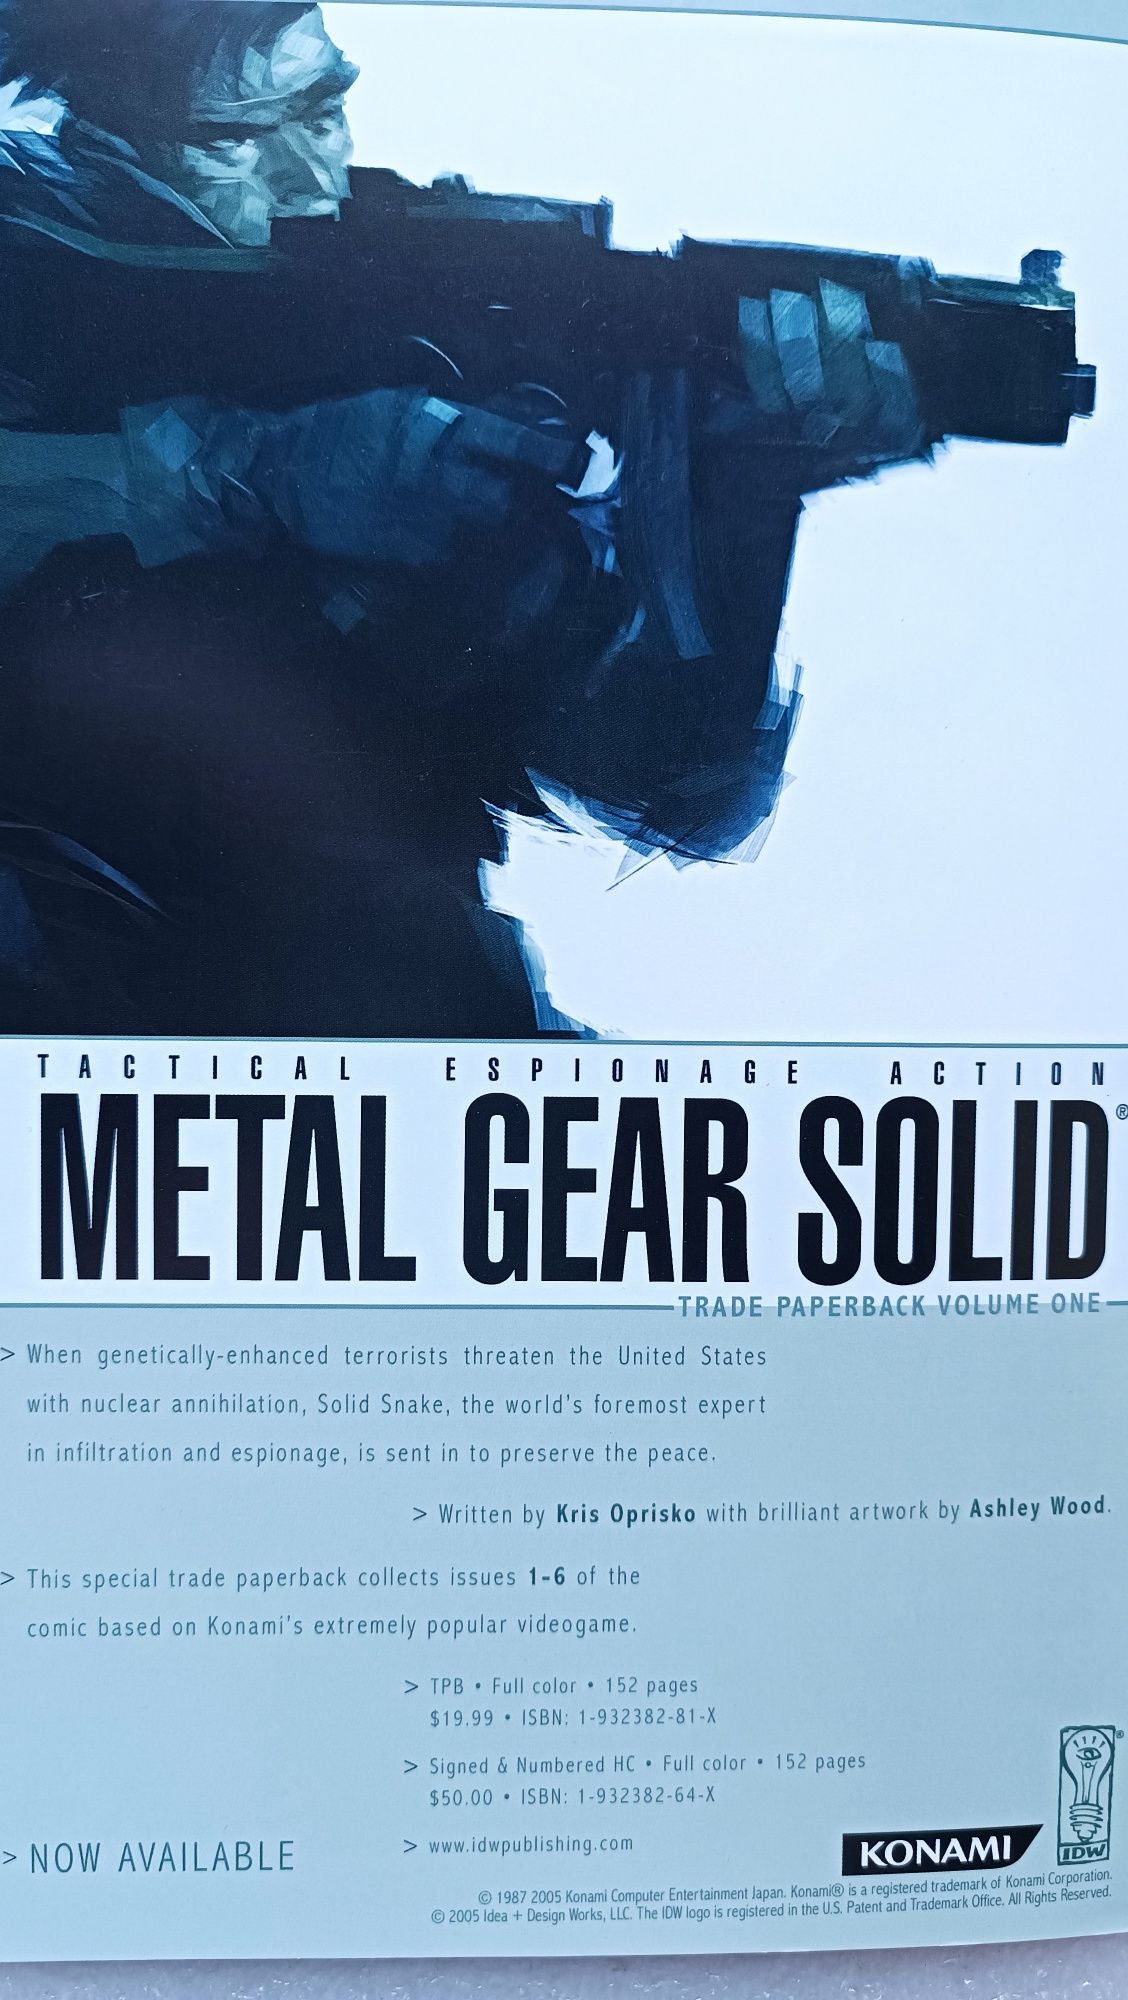 Raro e antiga lrevista Metal Gear Solid #10 de 2005